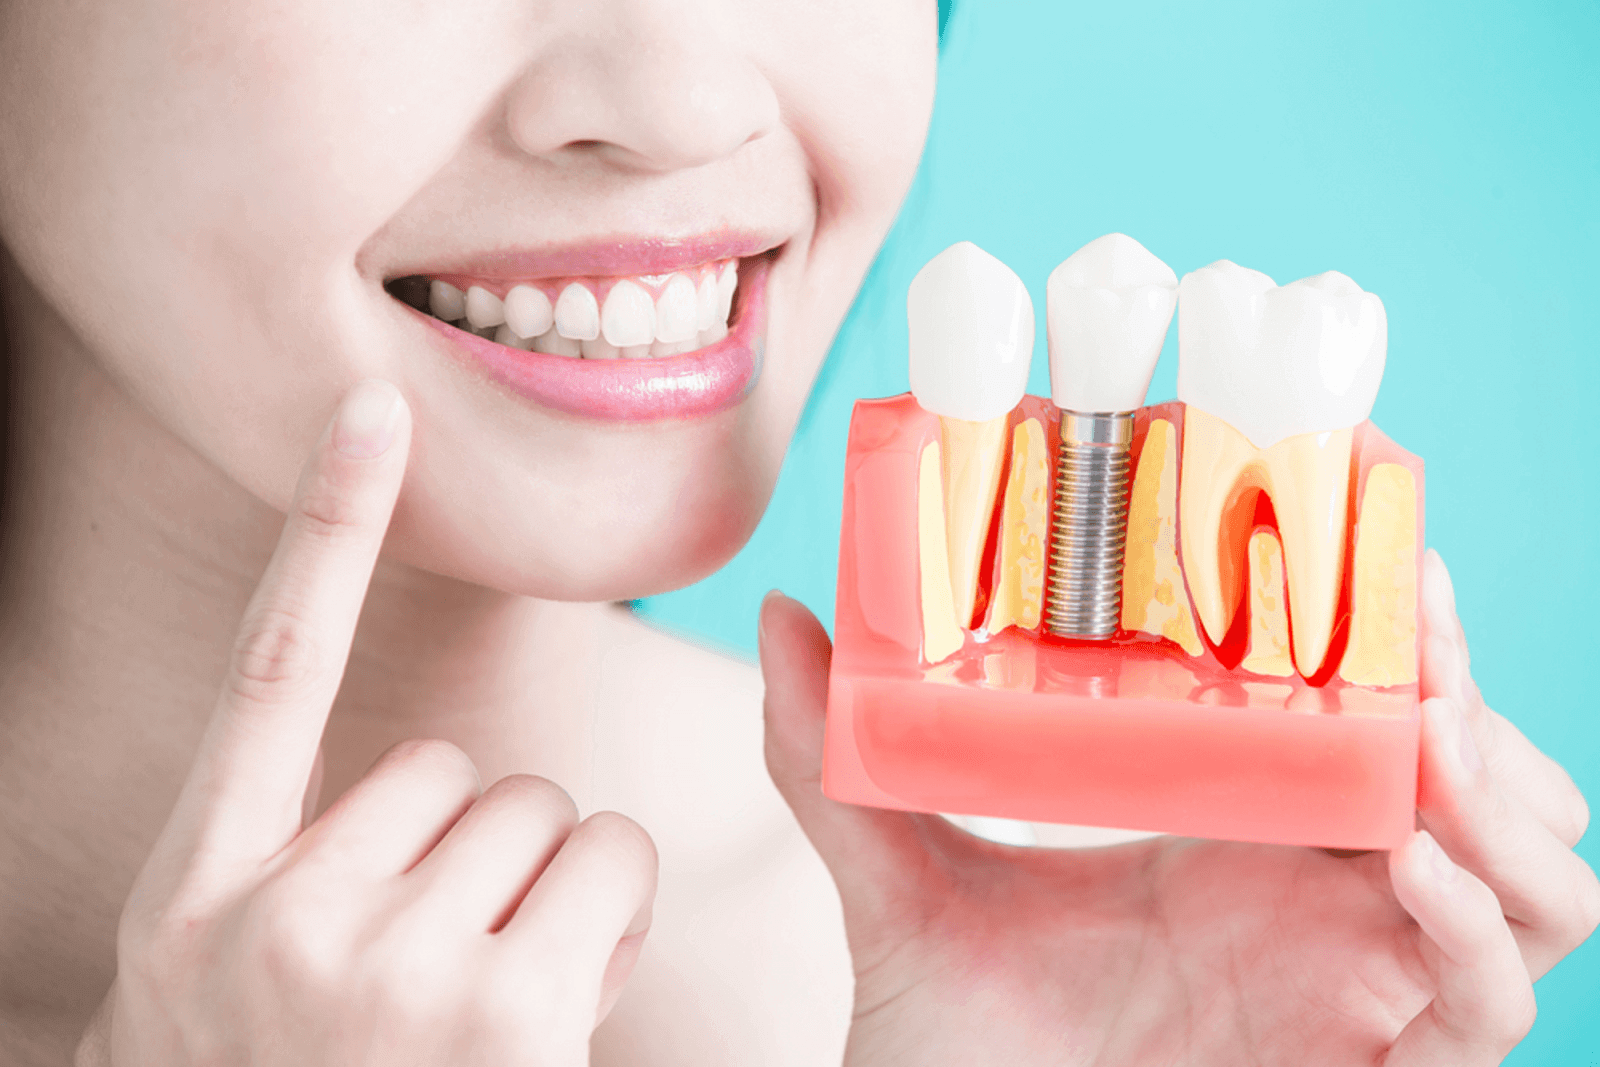 تجميل الأسنان الفرق او ما يعرف بالفلج حيث نجد ان هناك بعض الأشخاص